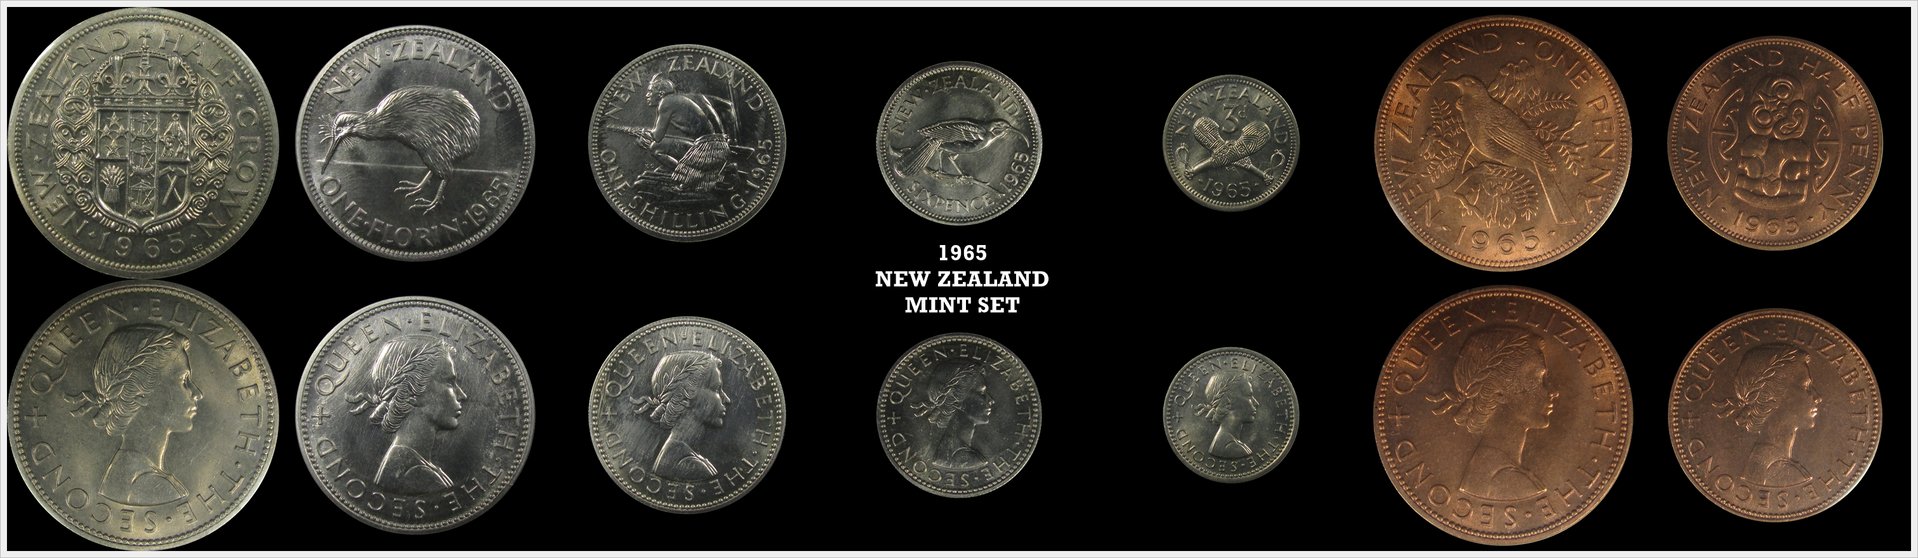 New Zealand 1965 Mint Set.jpg